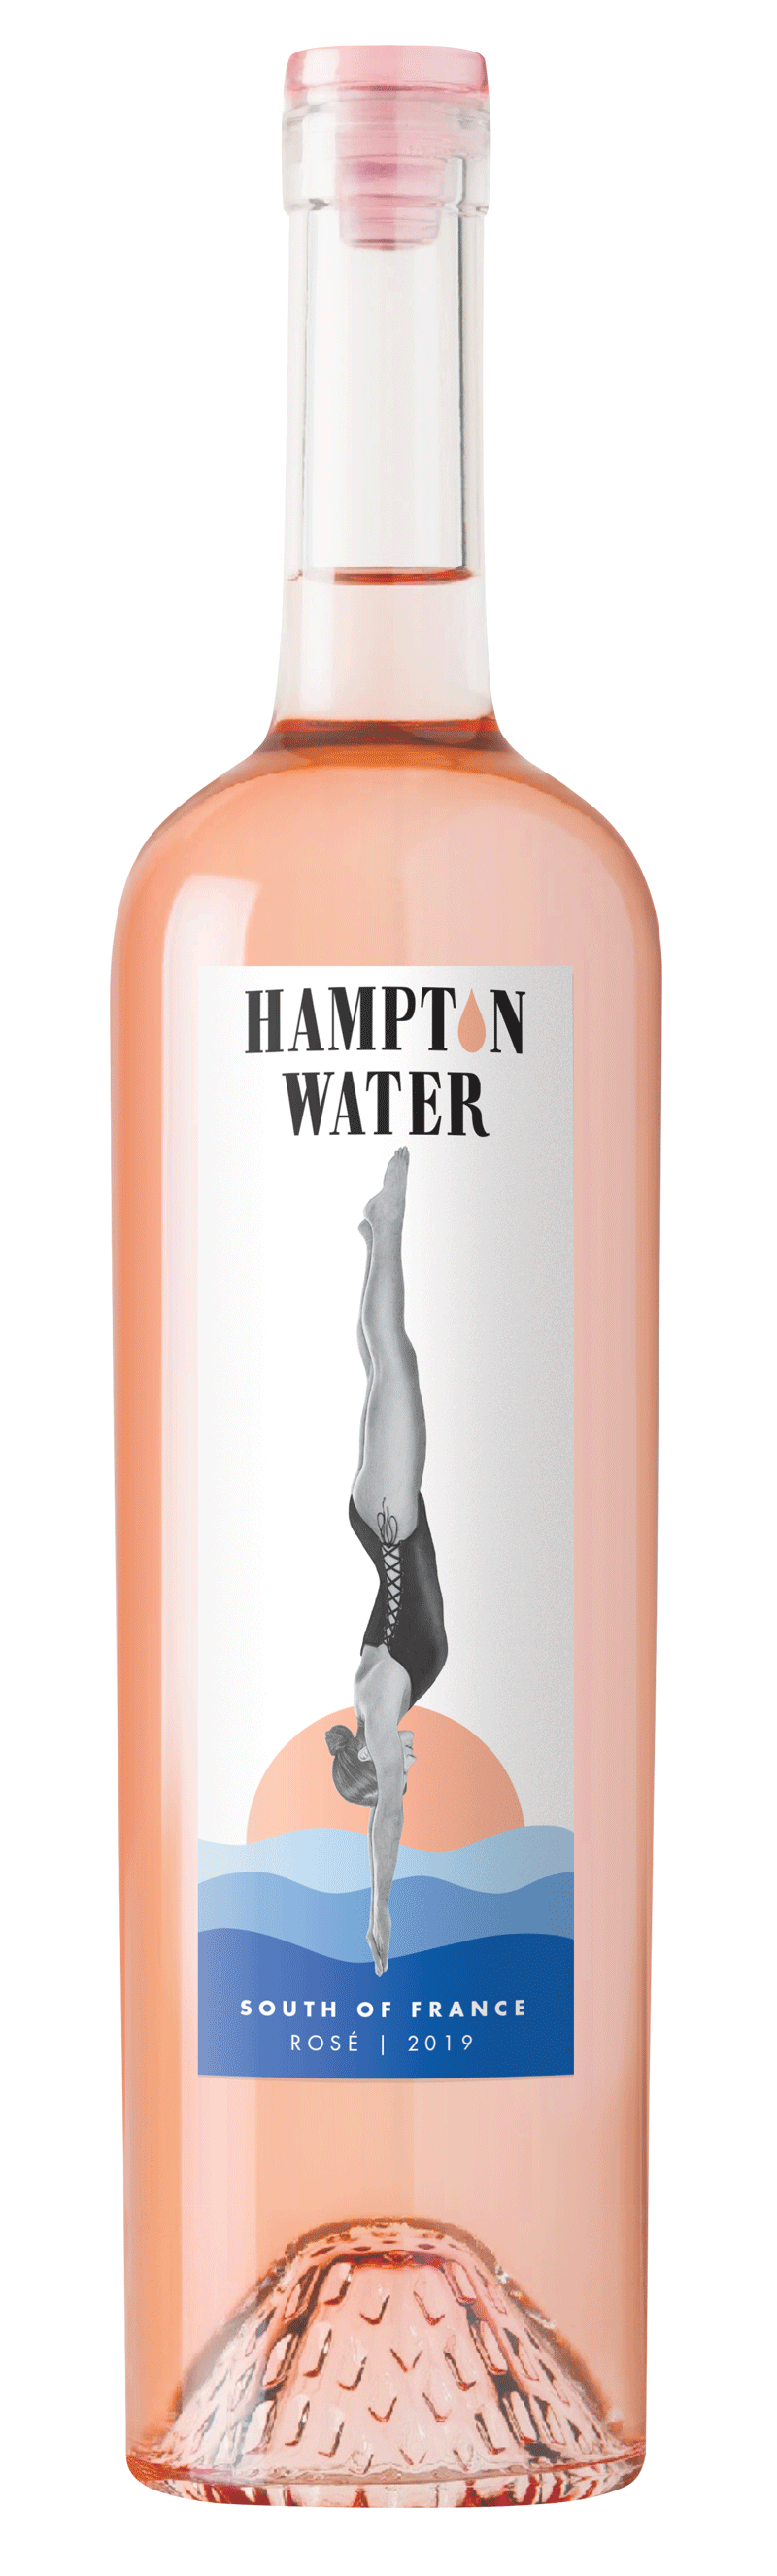 HAMPTON WATER ROSE 2020